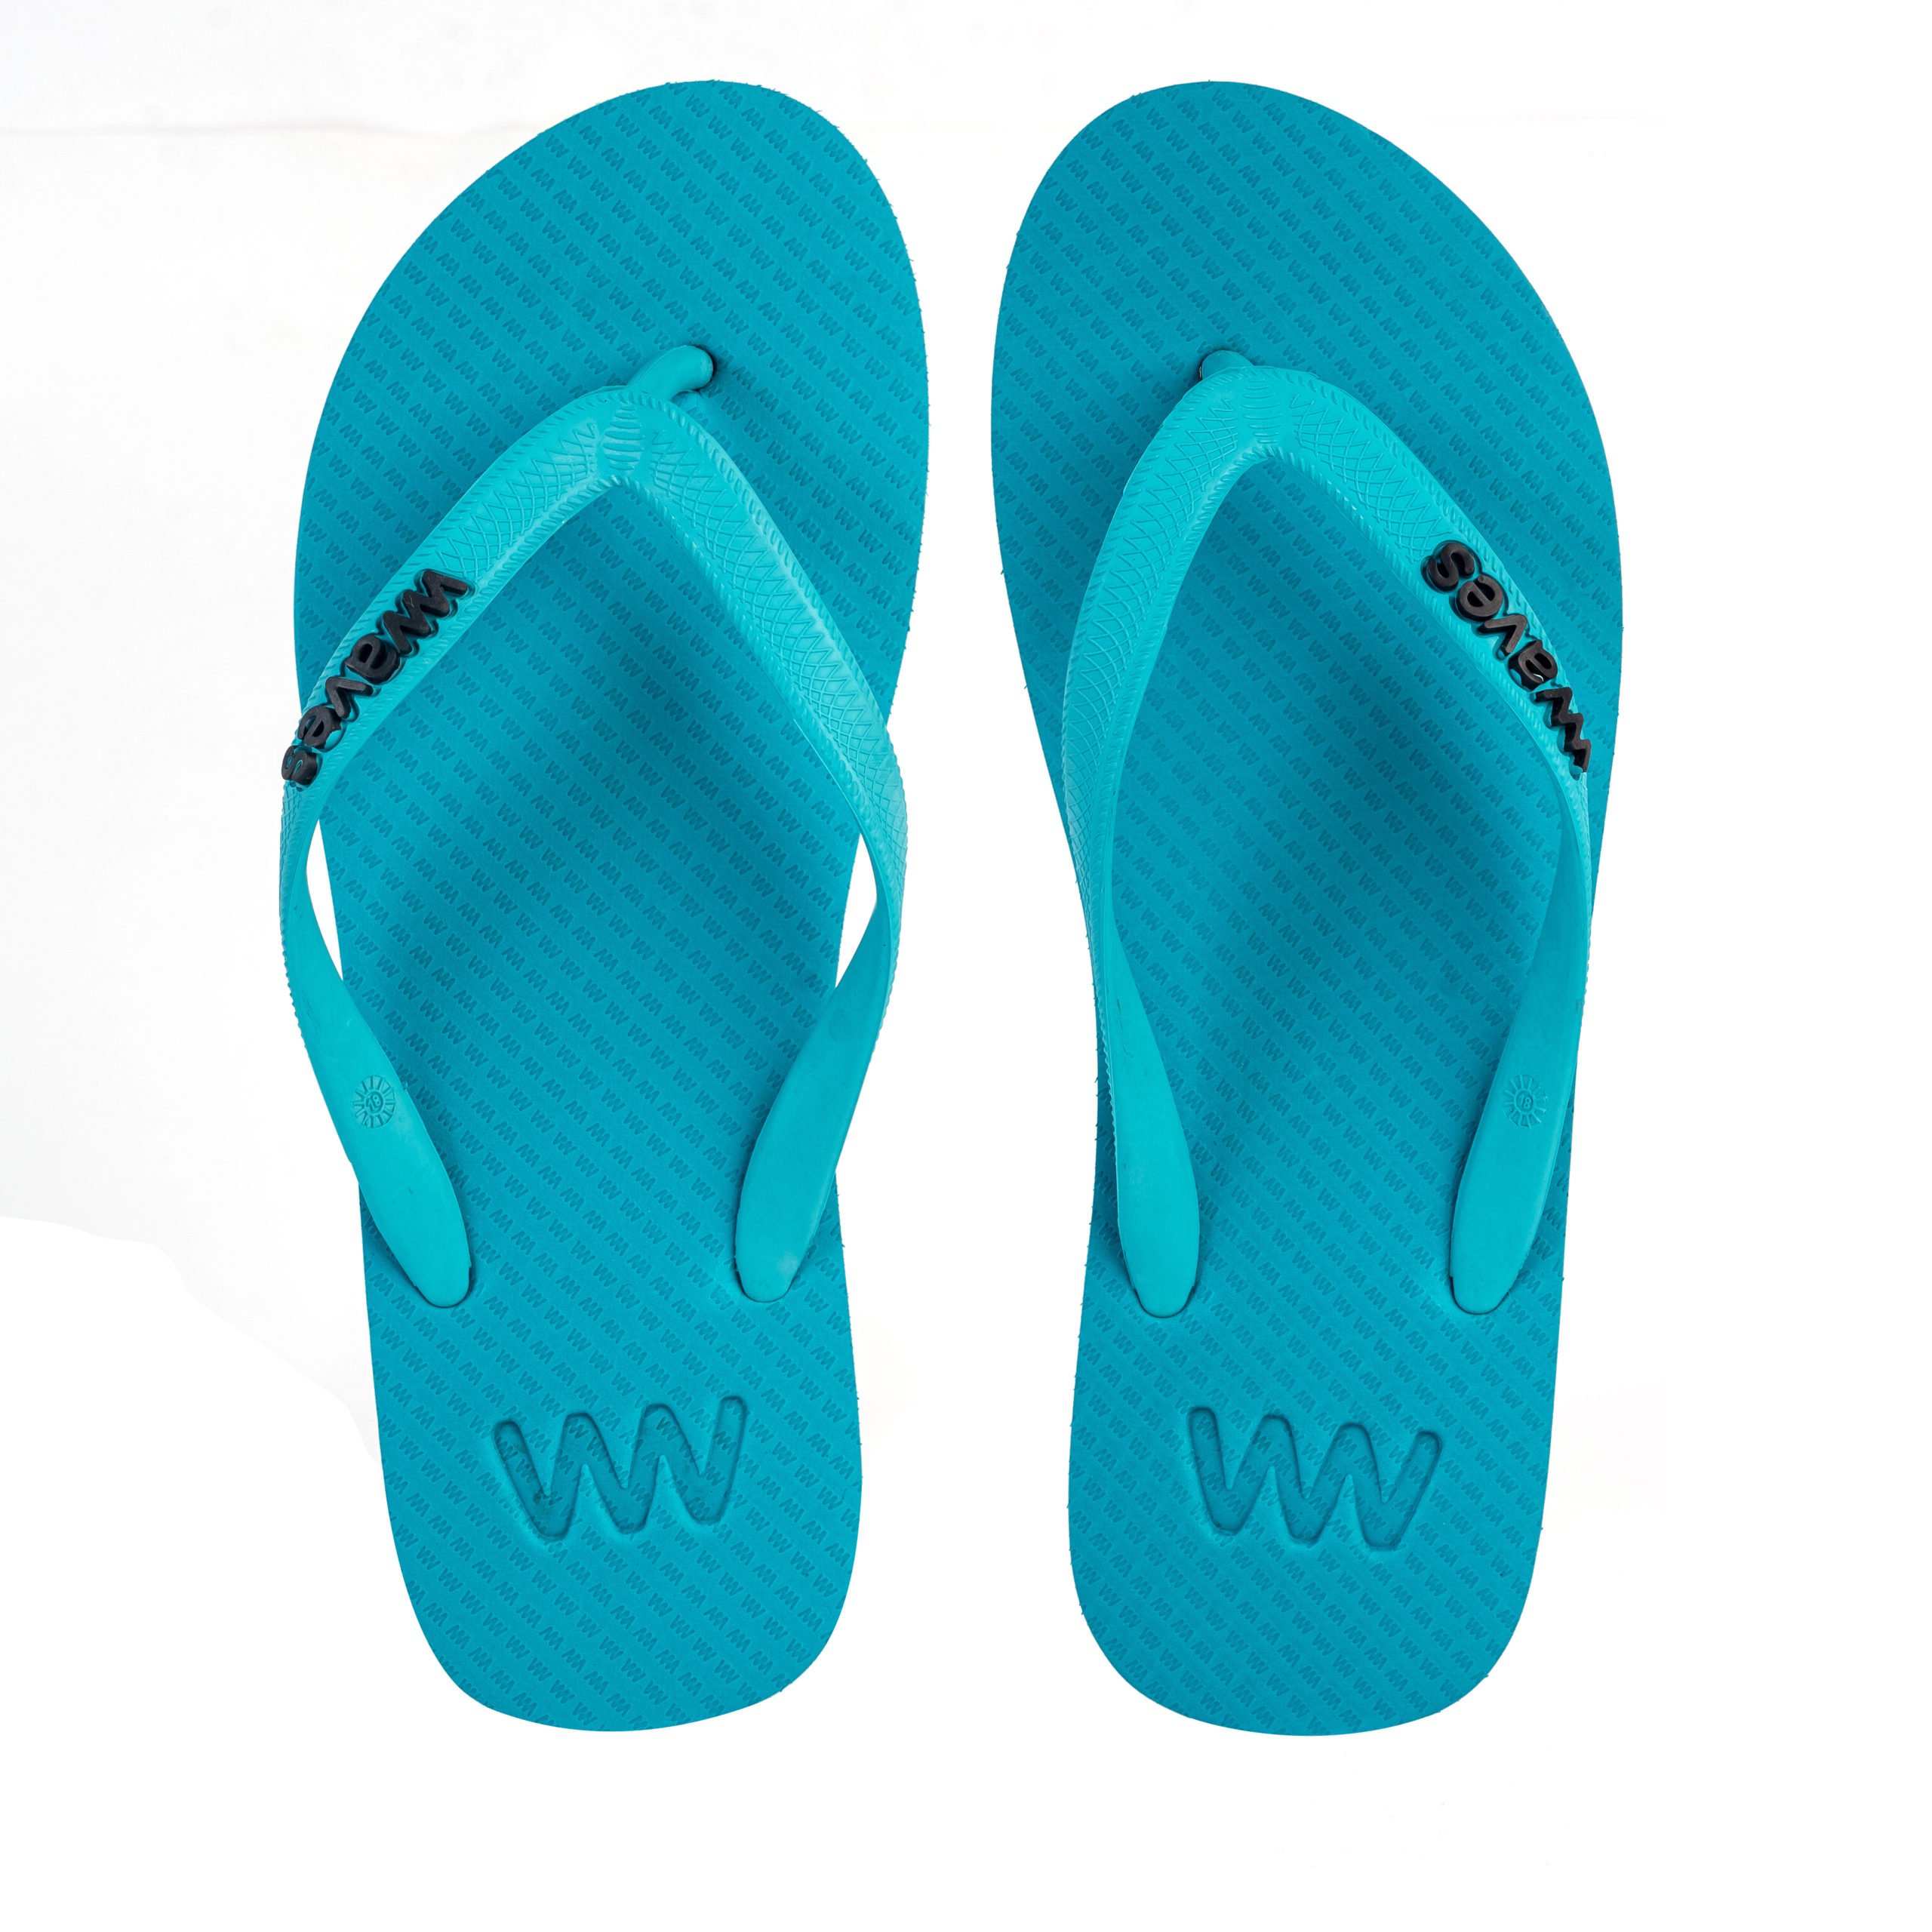 Natural Rubber Flip Flop - Turquoise - Waves Flip Flops UK